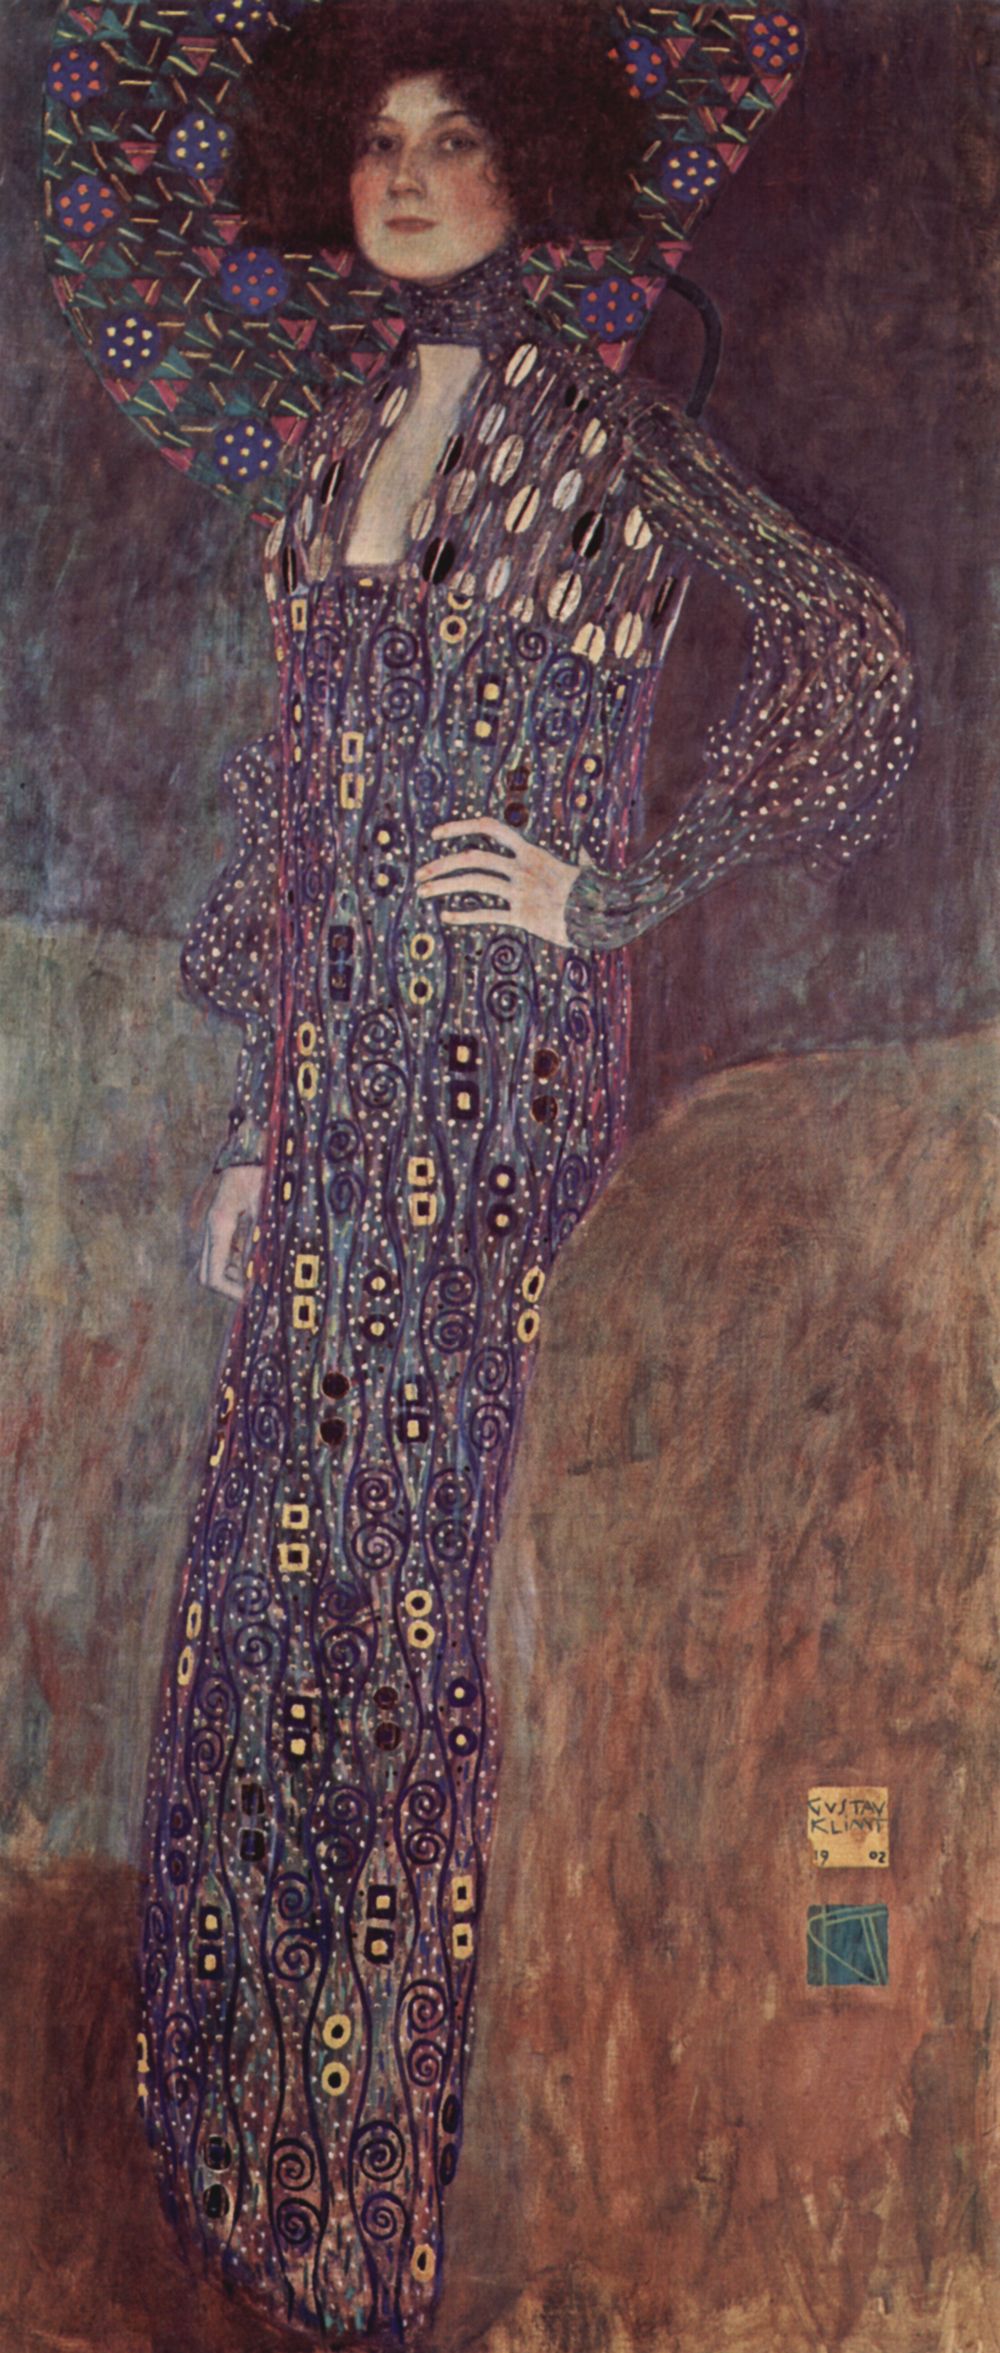 Gustav Klimt - Portrait of Emilie Flöge 1902